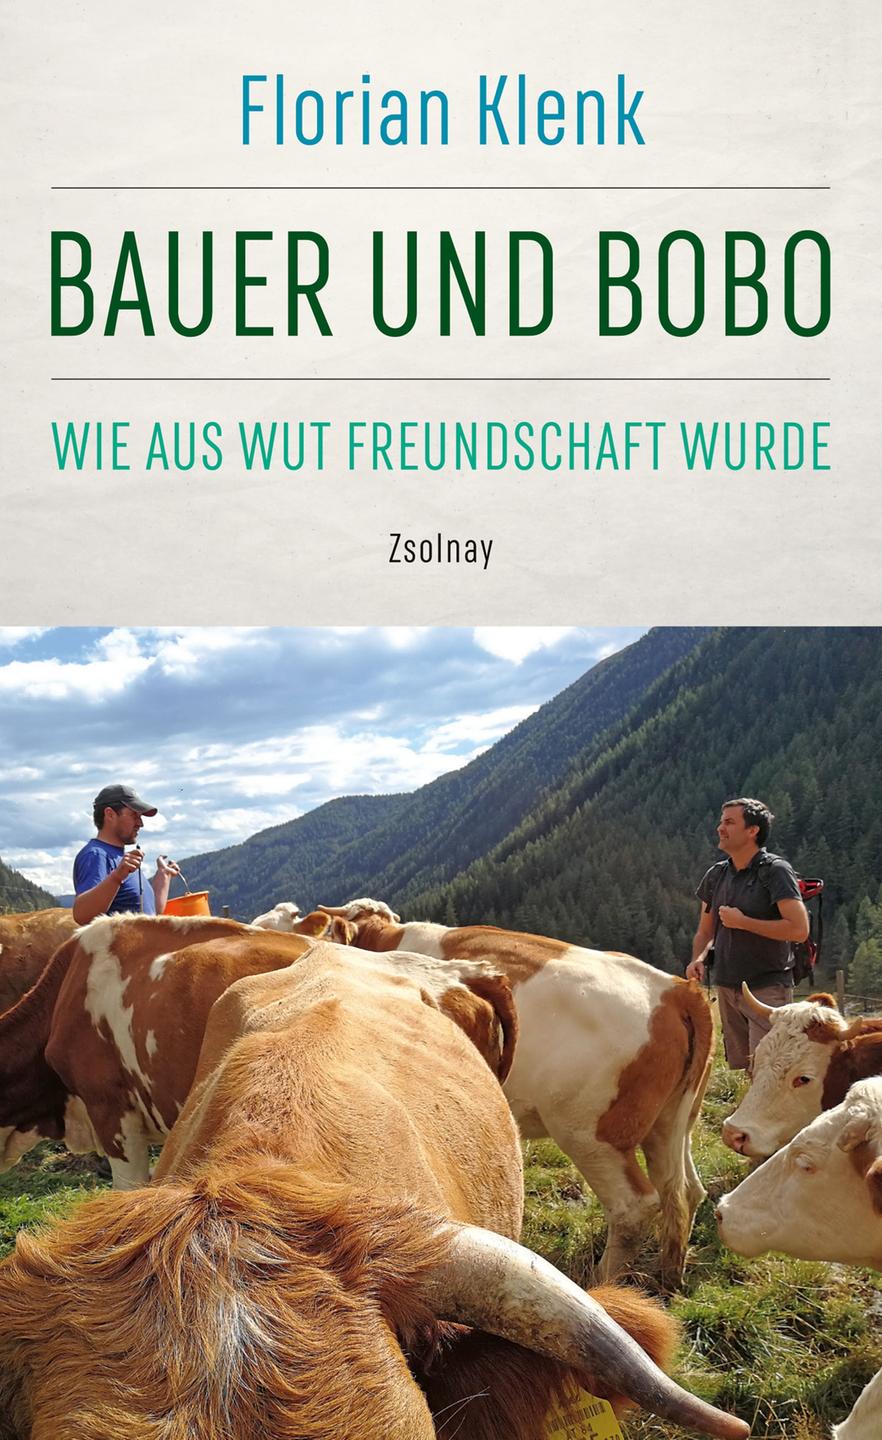 Buchcover zu "Bauer und Bobo".